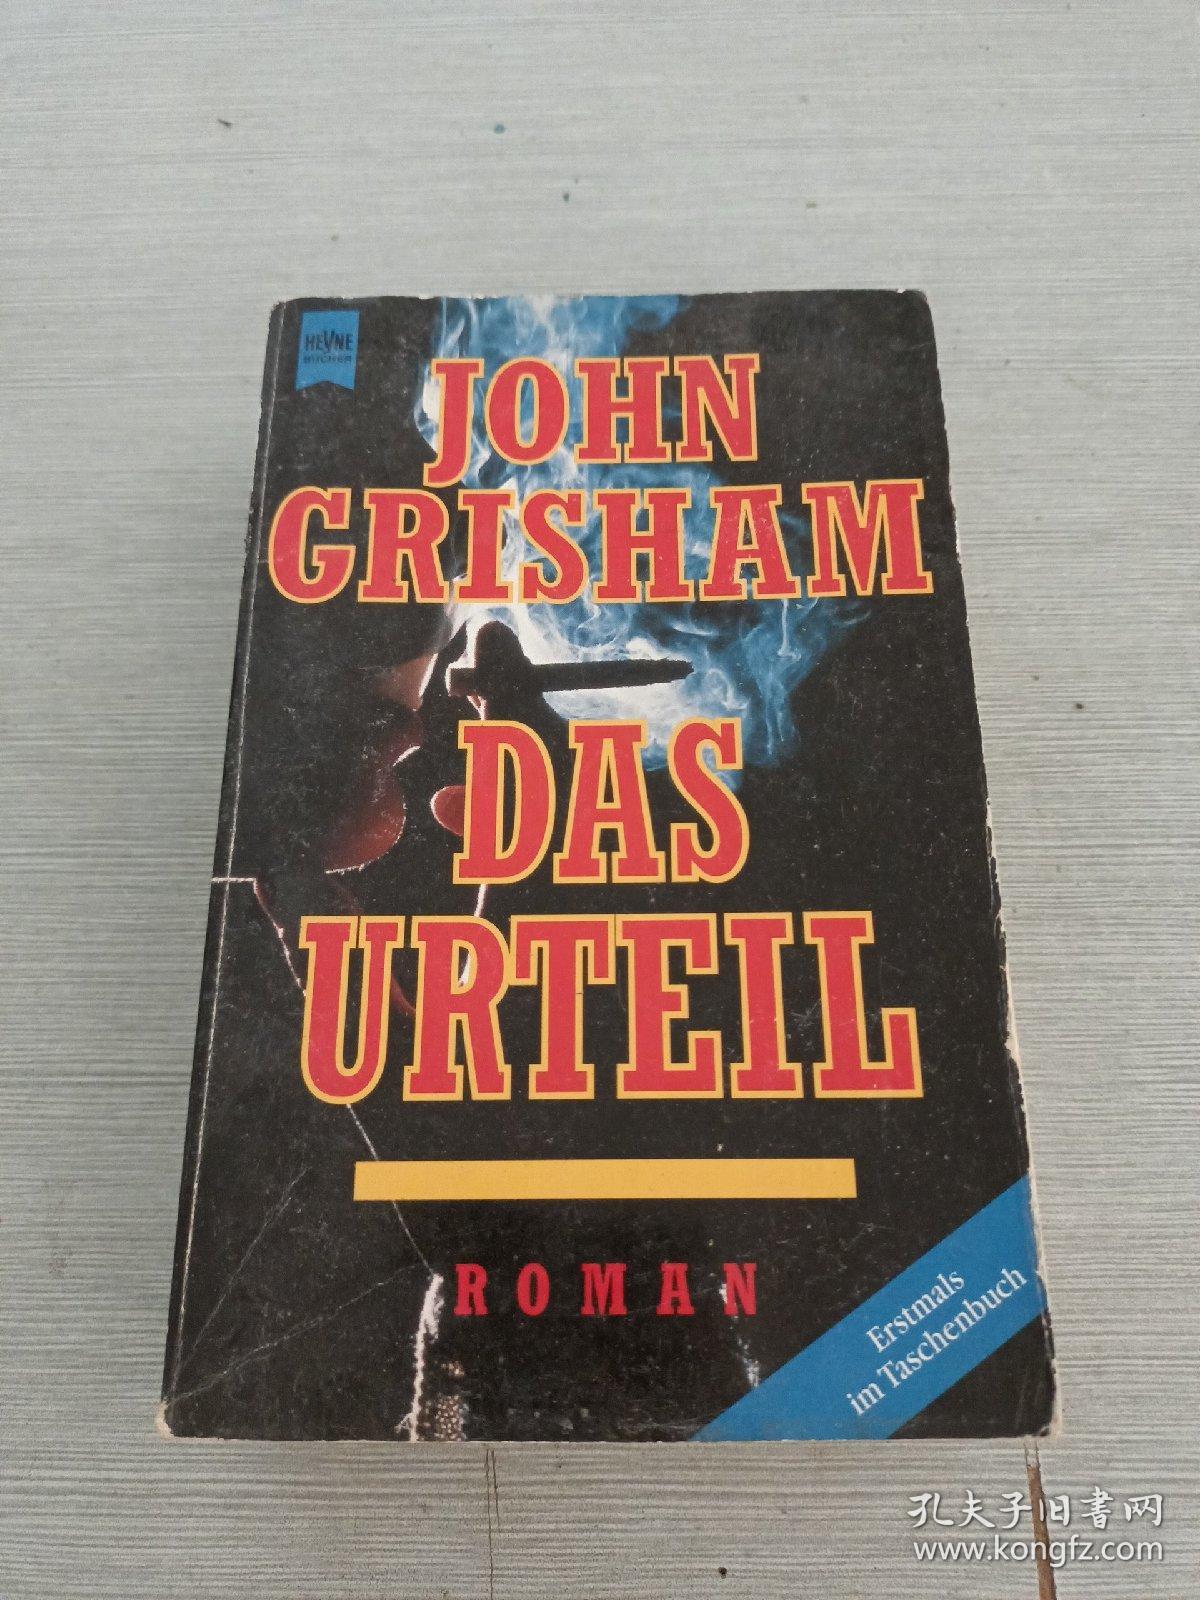 JOHN GRISHAM·DAS URTEIL